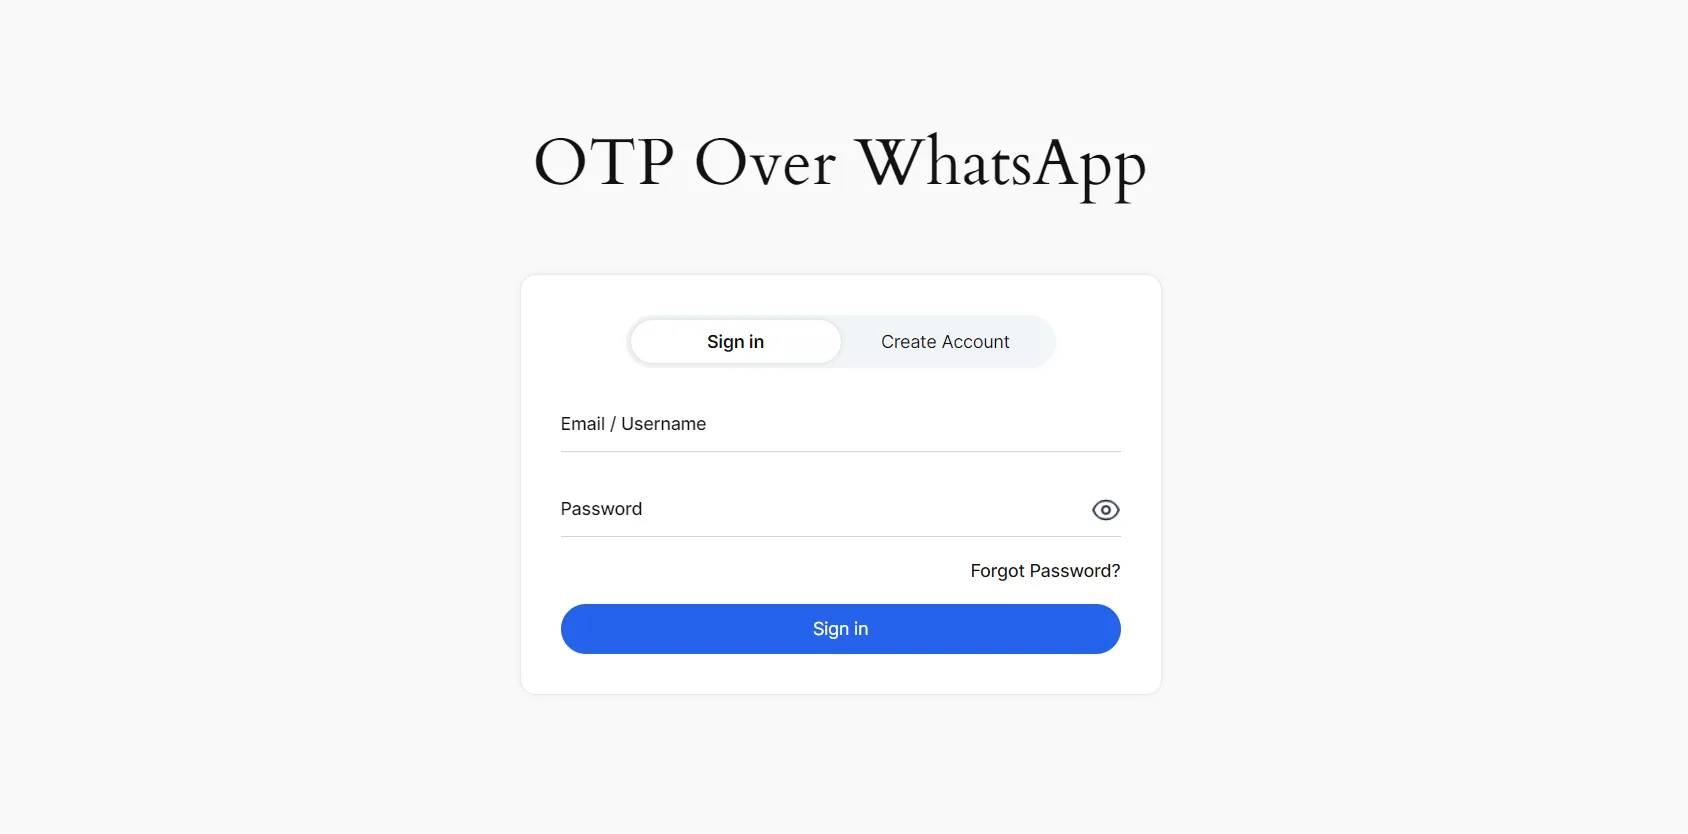 Iniciar sesión en WhatsApp con OTP - Página de inicio de sesión de Whatsapp